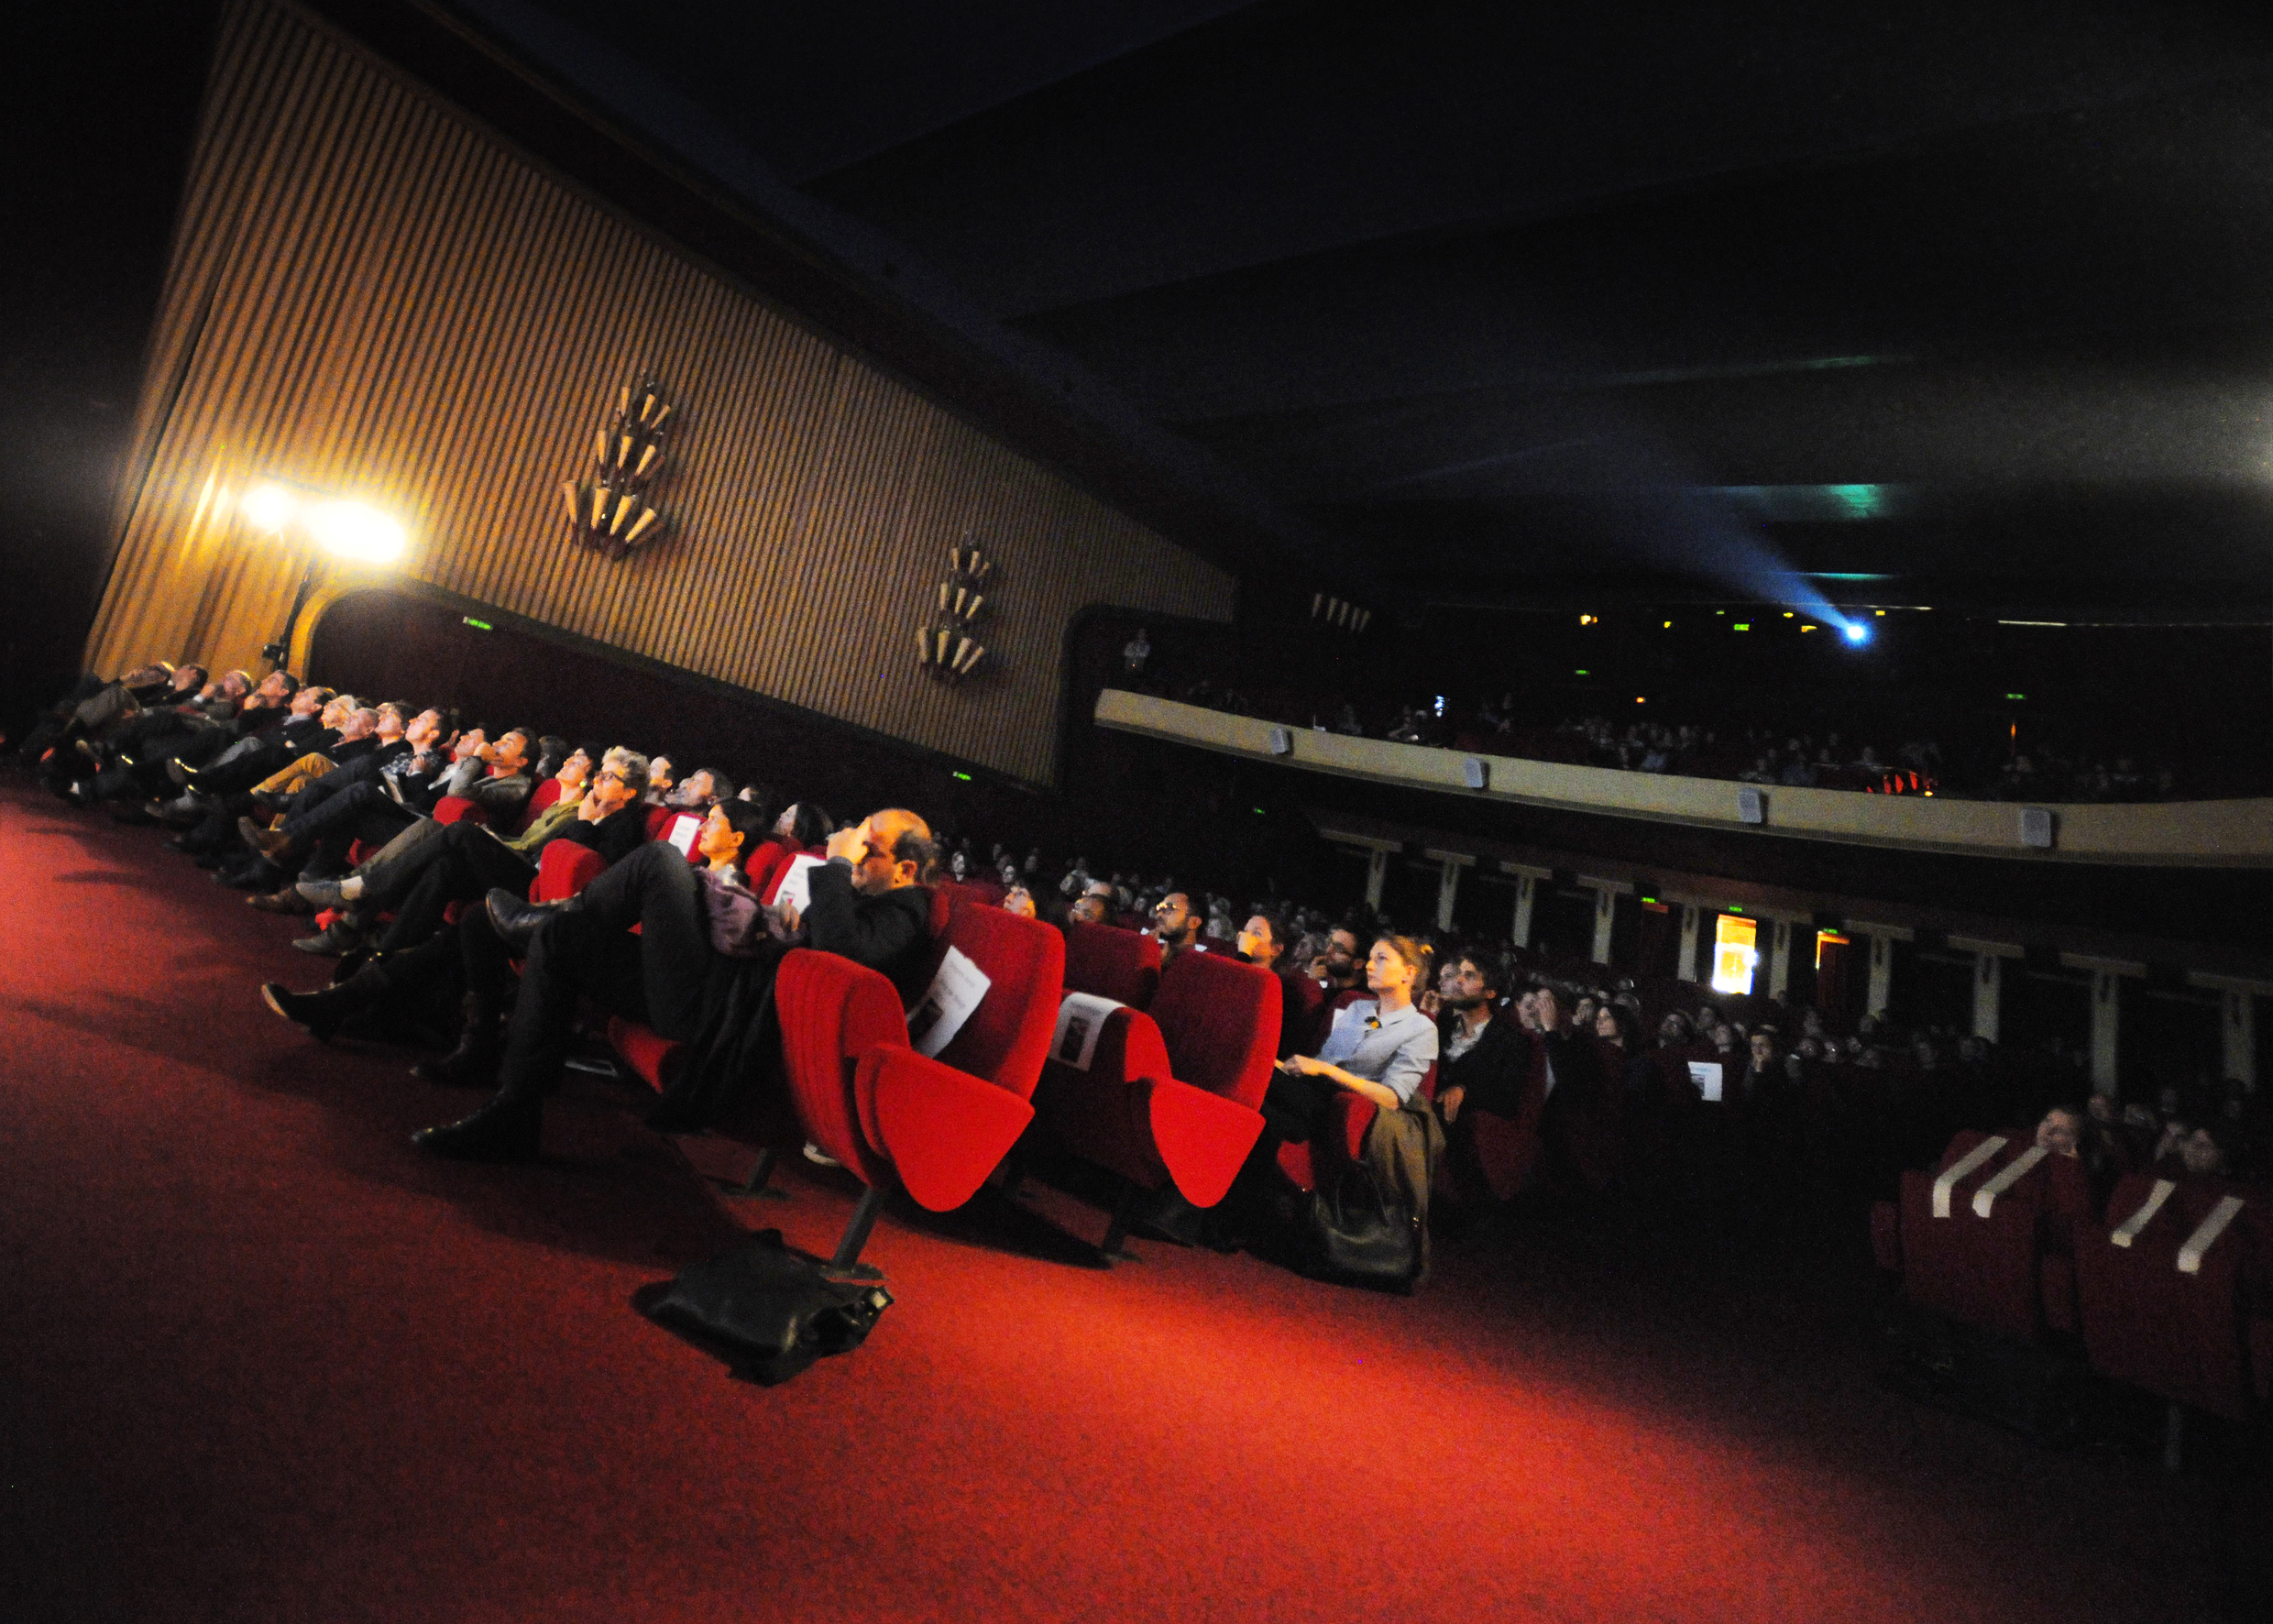 Preisverleihung im Cinéma Capitole Lausanne